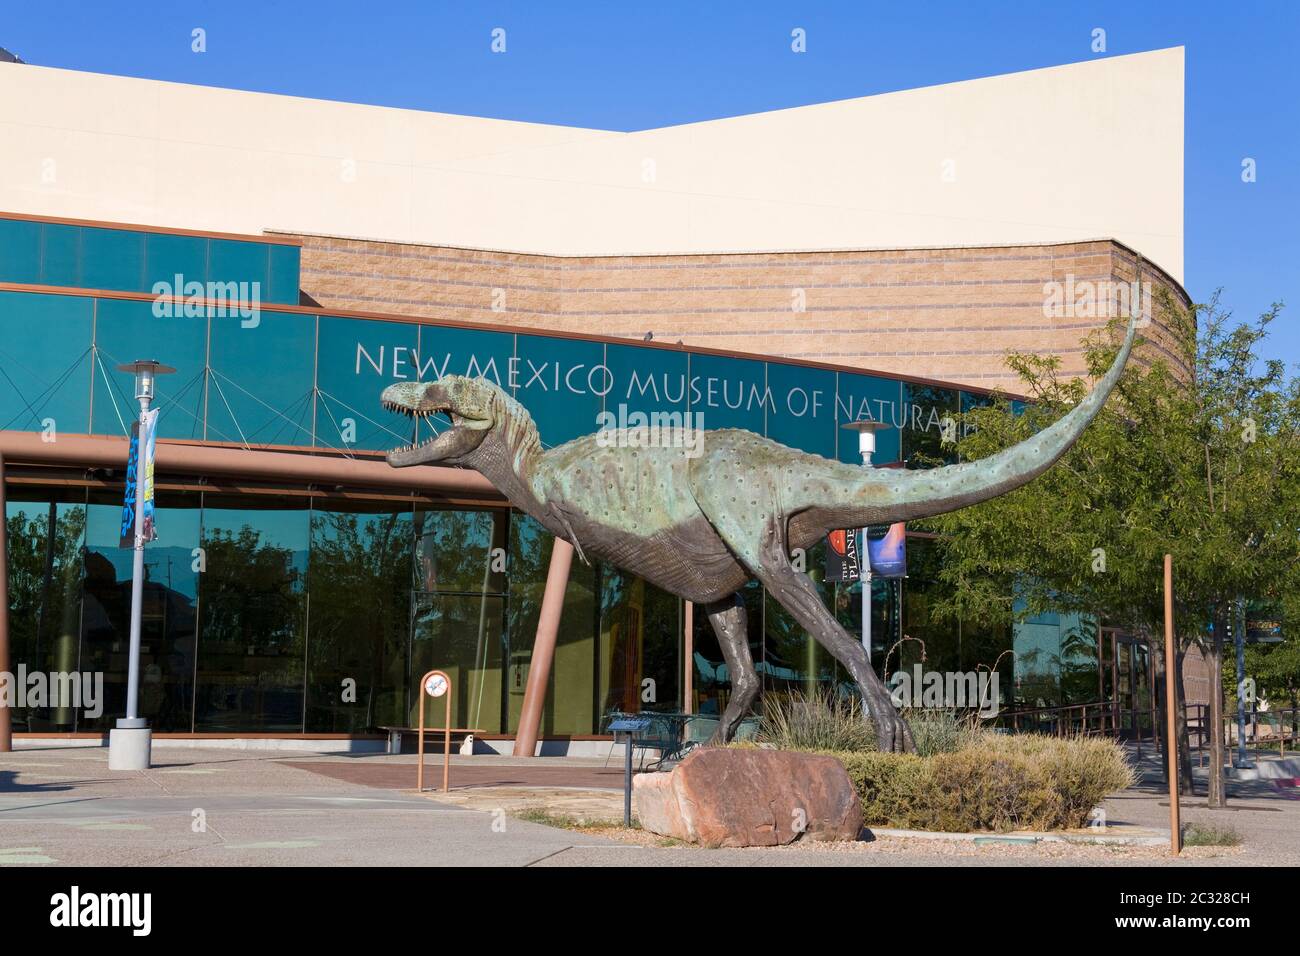 Albertosaurus au Musée d'Histoire naturelle du Nouveau-Mexique, Albuquerque, Nouveau-Mexique, États-Unis Banque D'Images